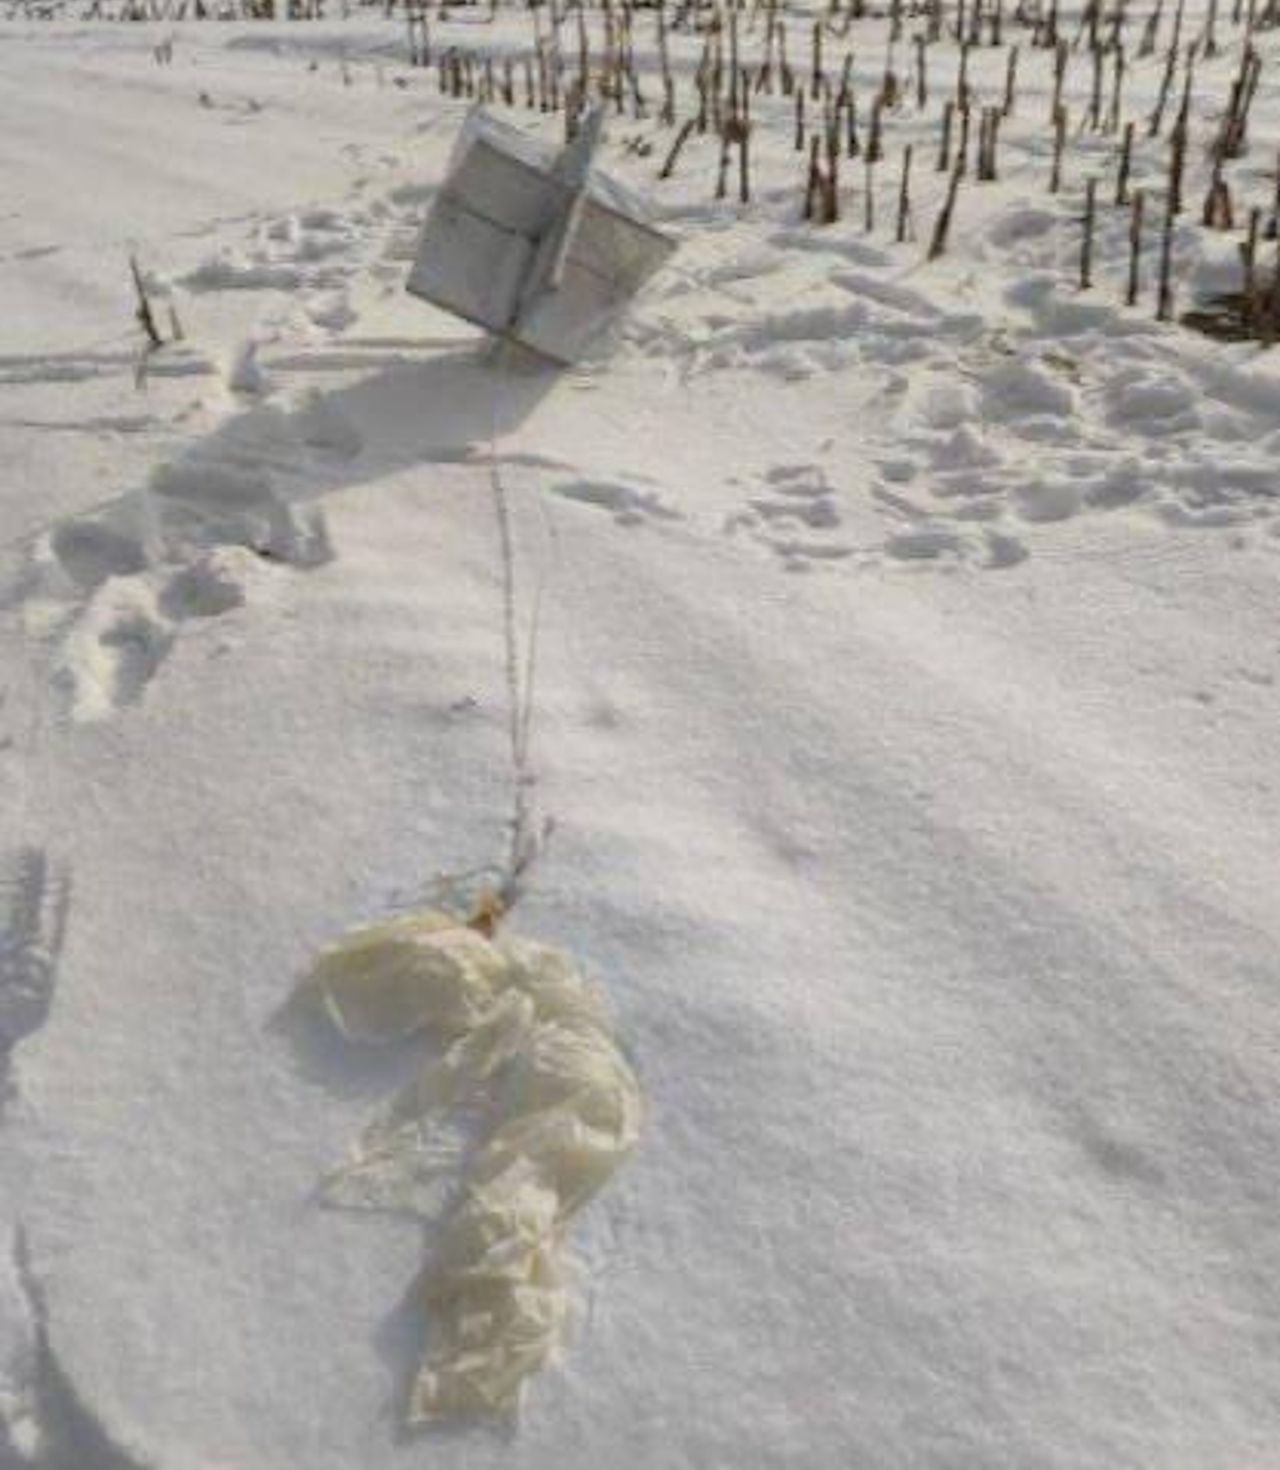 Szczątki balonu zestrzelonego w pobliżu Kijowa - widoczna zniszczona powłoka i odbłyśnik radarowy